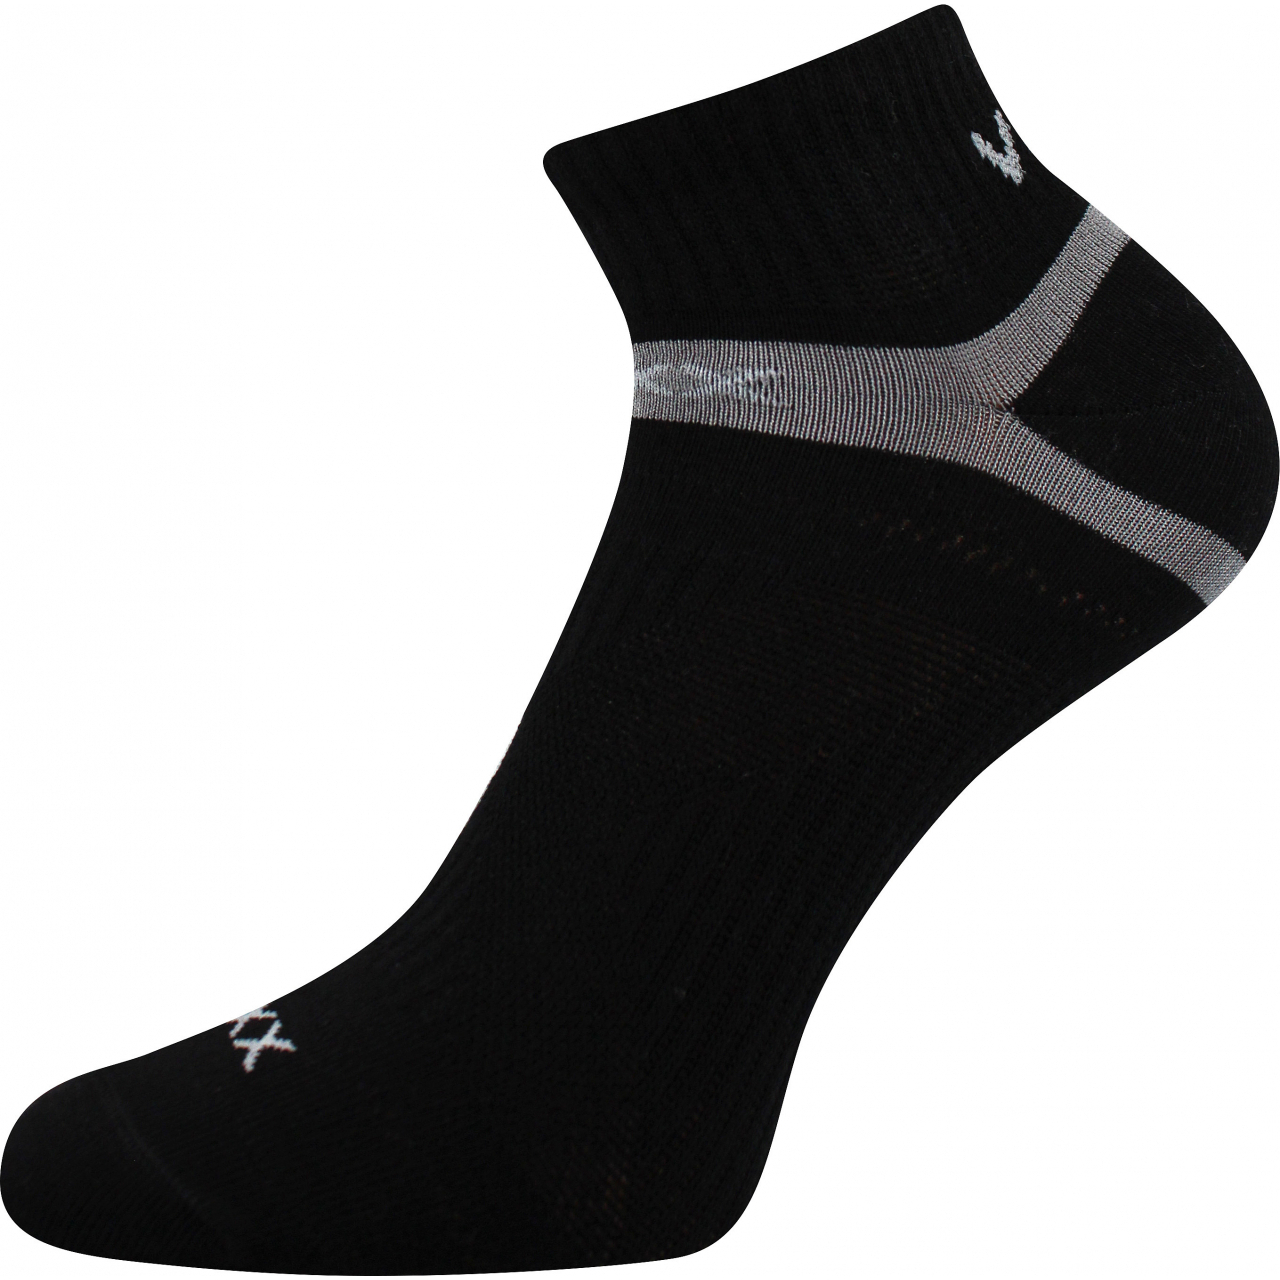 Ponožky klasické unisex Voxx Rex 14 - černé, 43-46